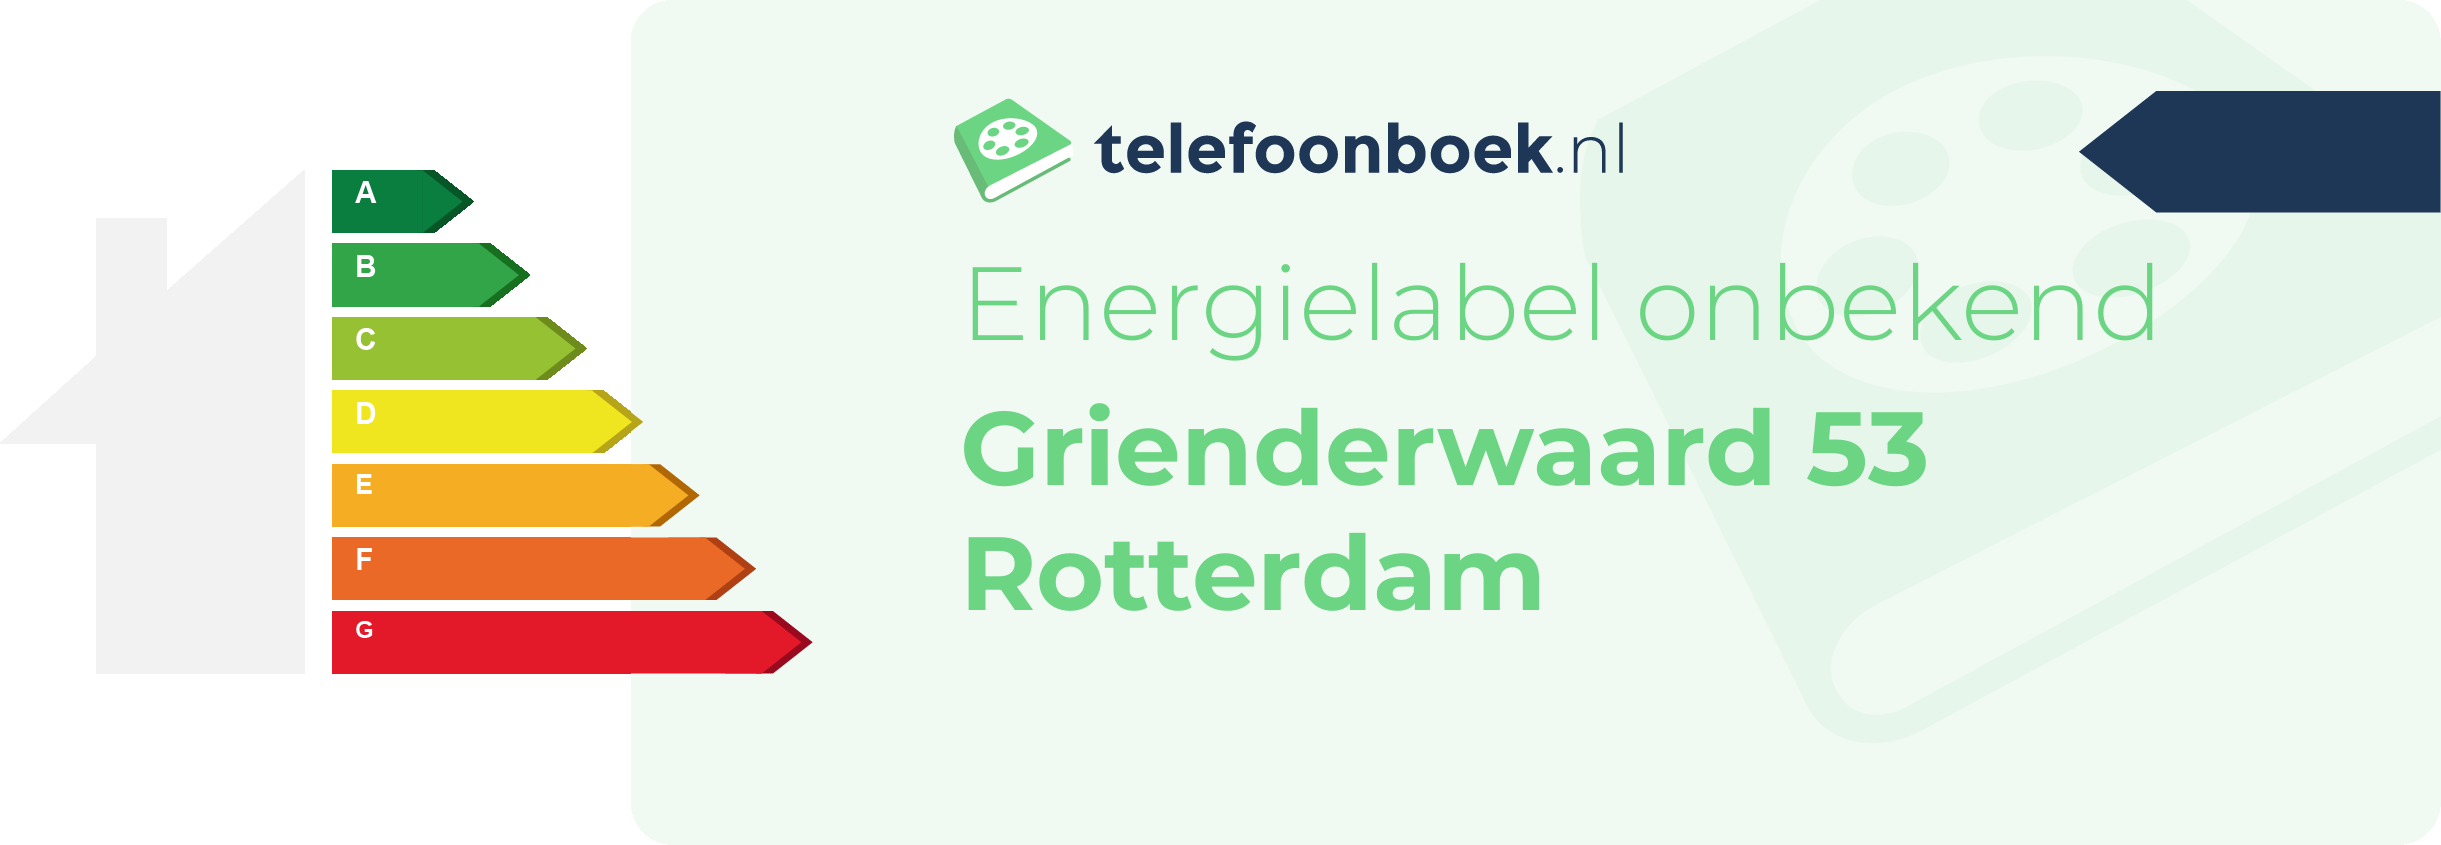 Energielabel Grienderwaard 53 Rotterdam